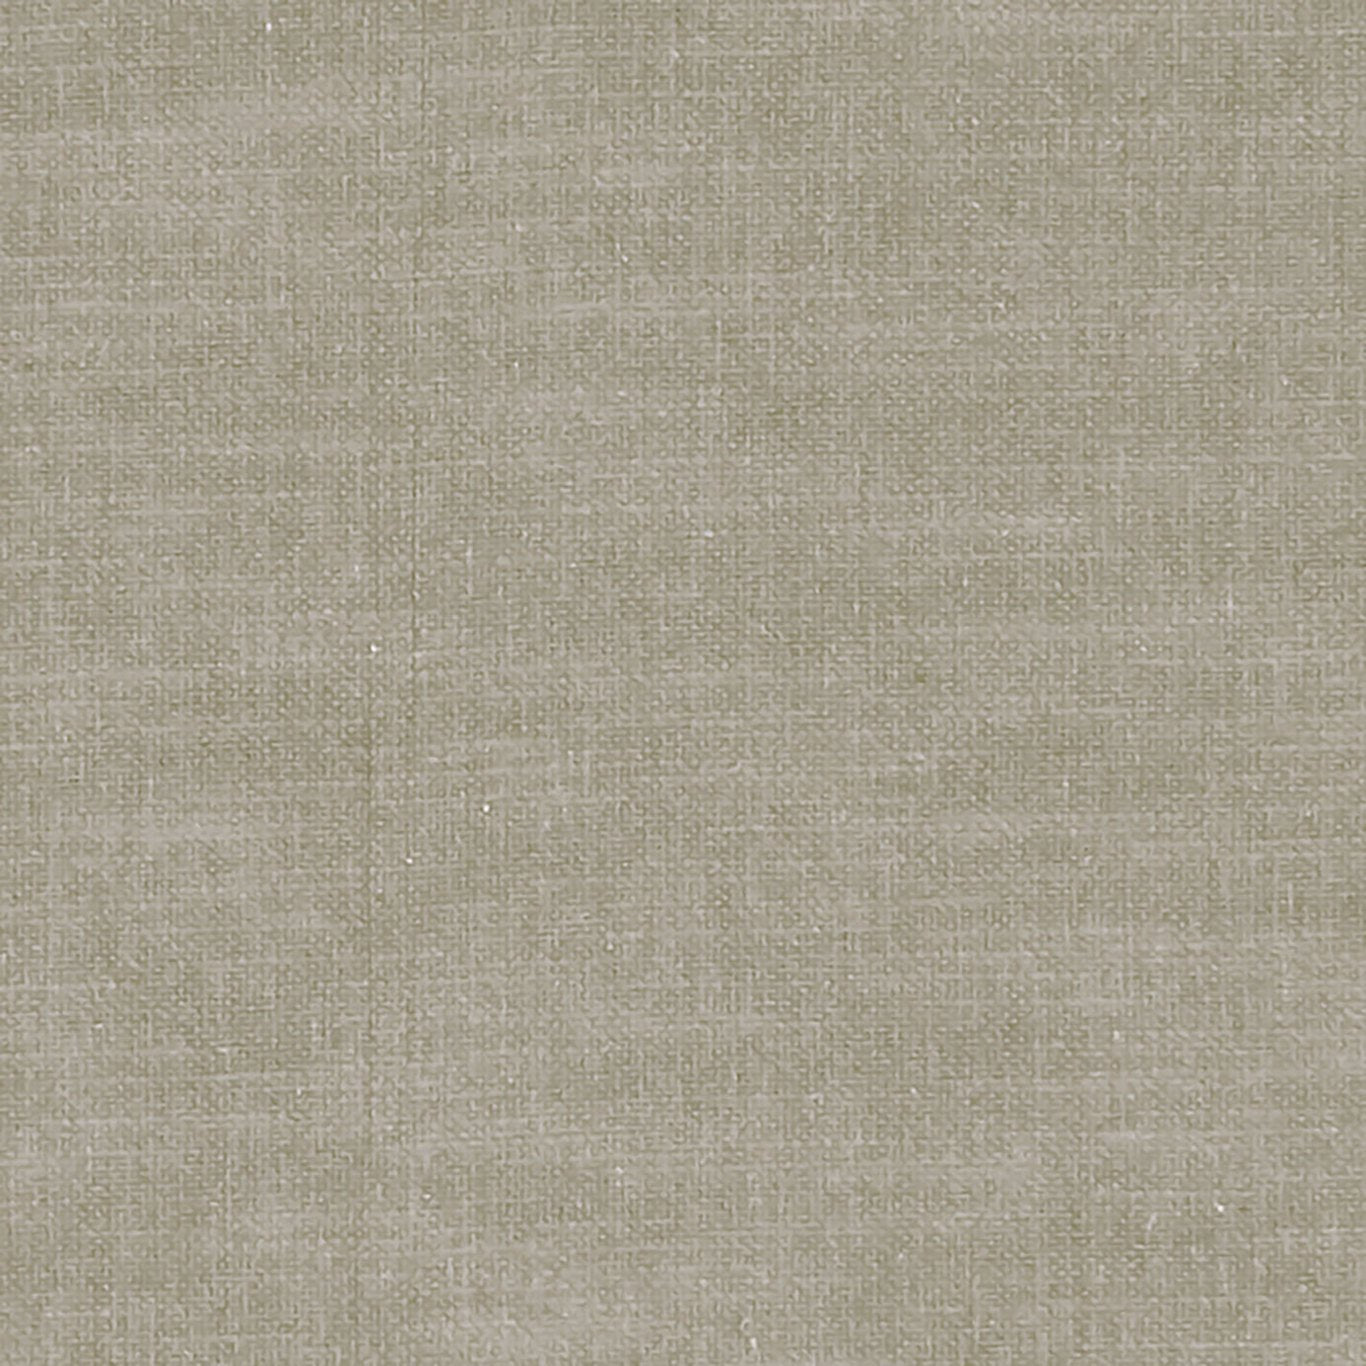 Amalfi Fabric by Clarke & Clarke - F1239/52 - Putty